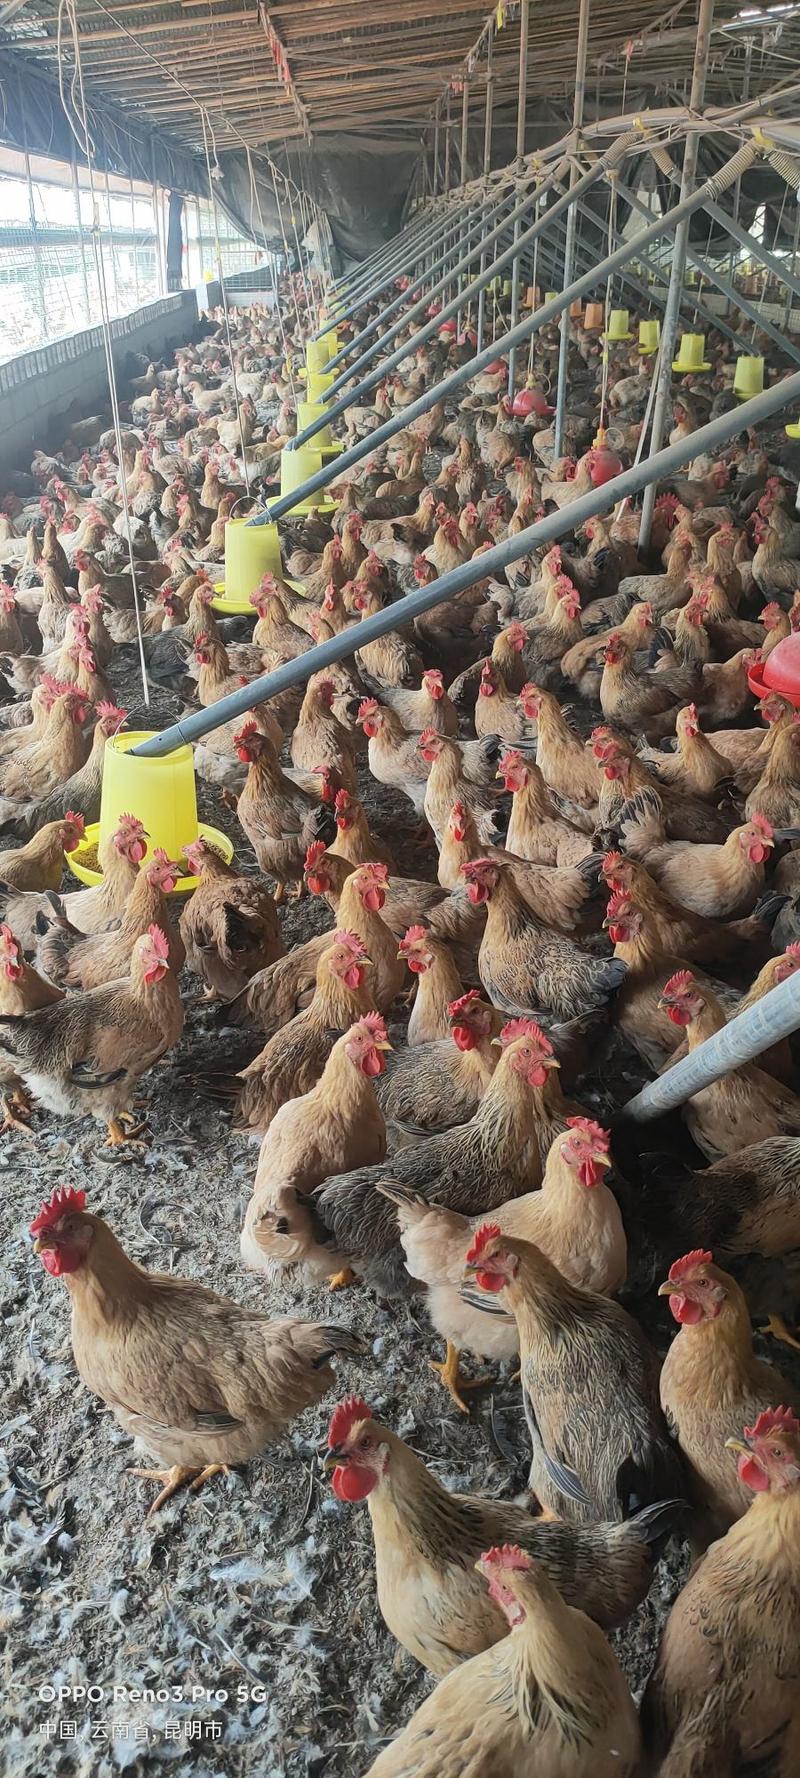 常年供应活禽放养三黄鸡成品鸡母鸡量大从优可定制生产